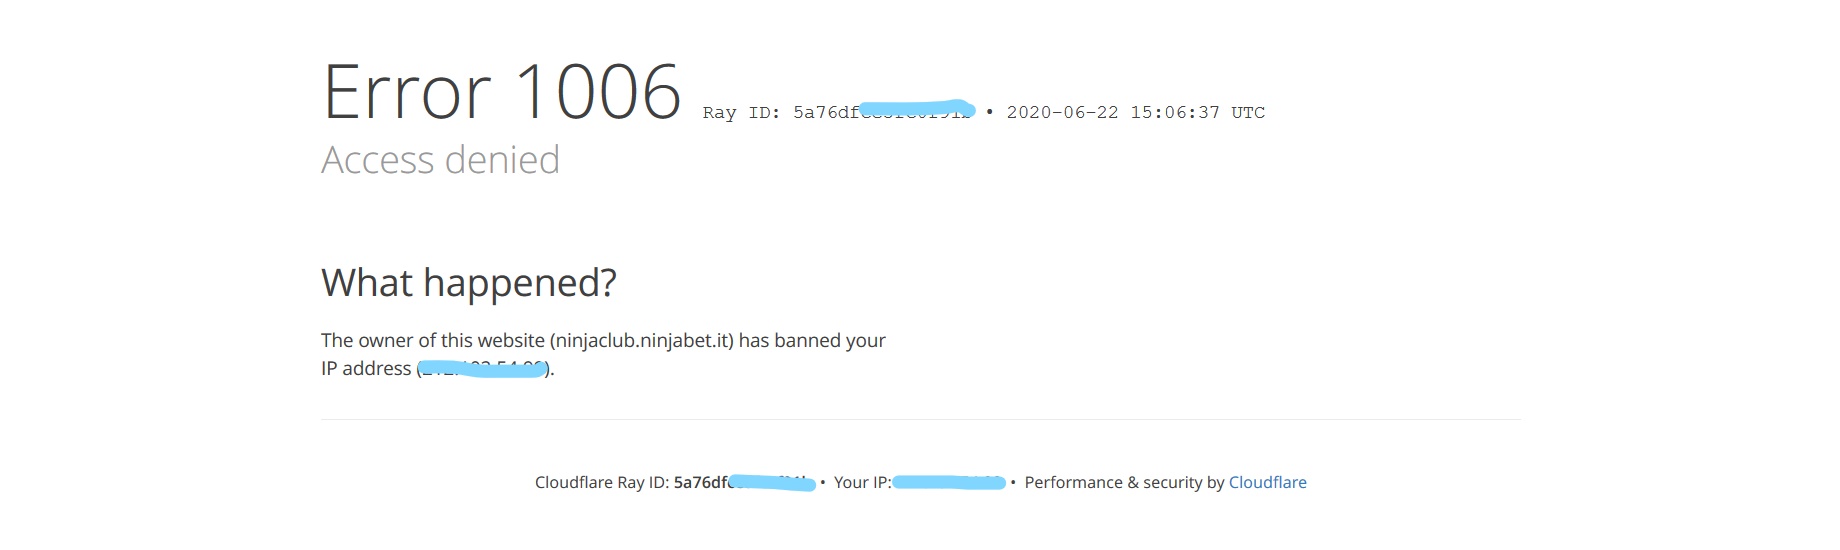 InkedScreenshot_2020-06-22 Access denied ninjaclub ninjabet it used Cloudflare to restrict access_LI.jpg